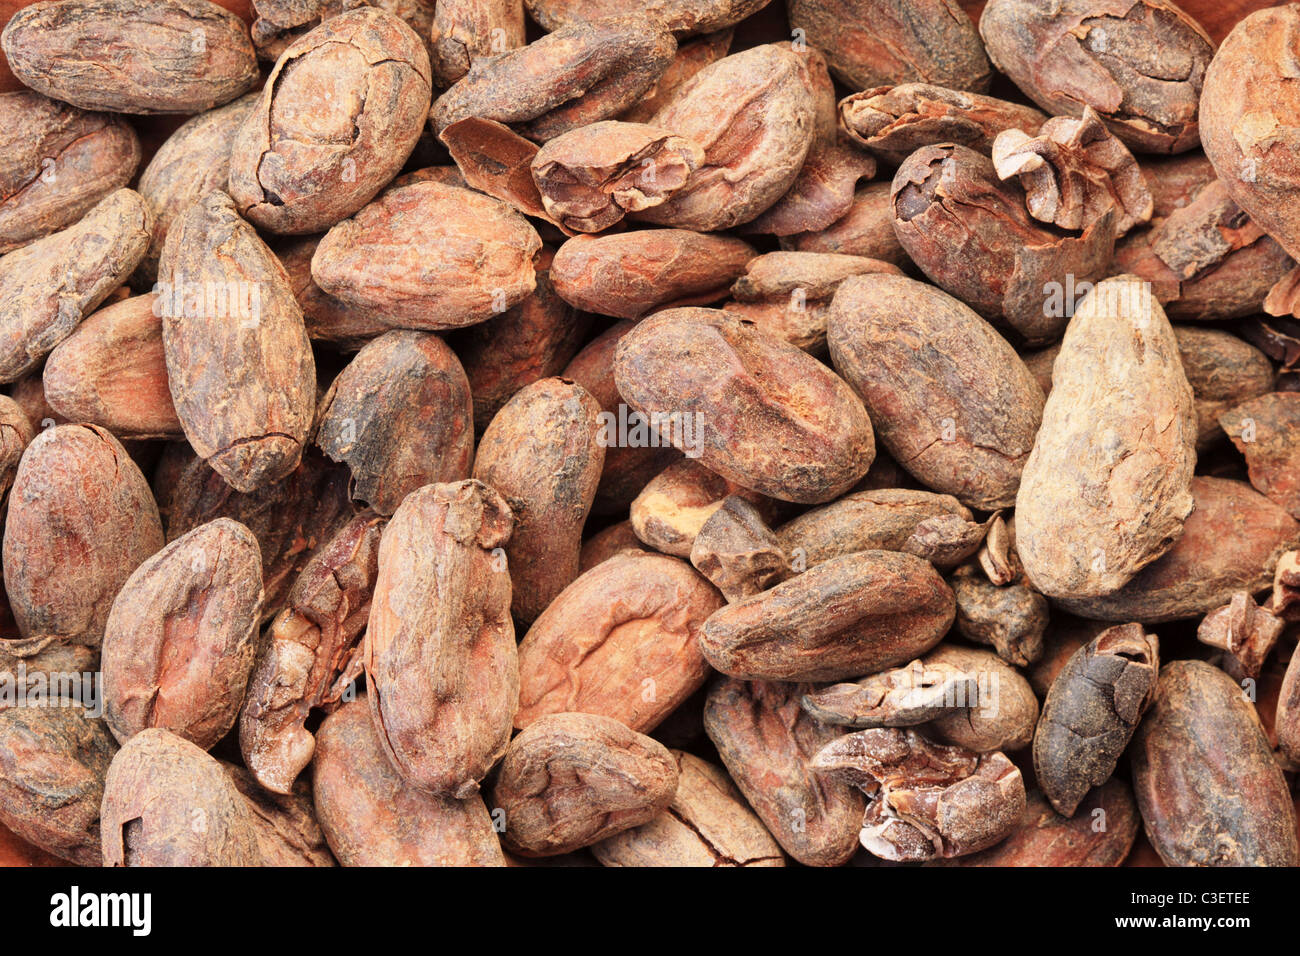 Image de fond de cacao ou de fèves de cacao Banque D'Images